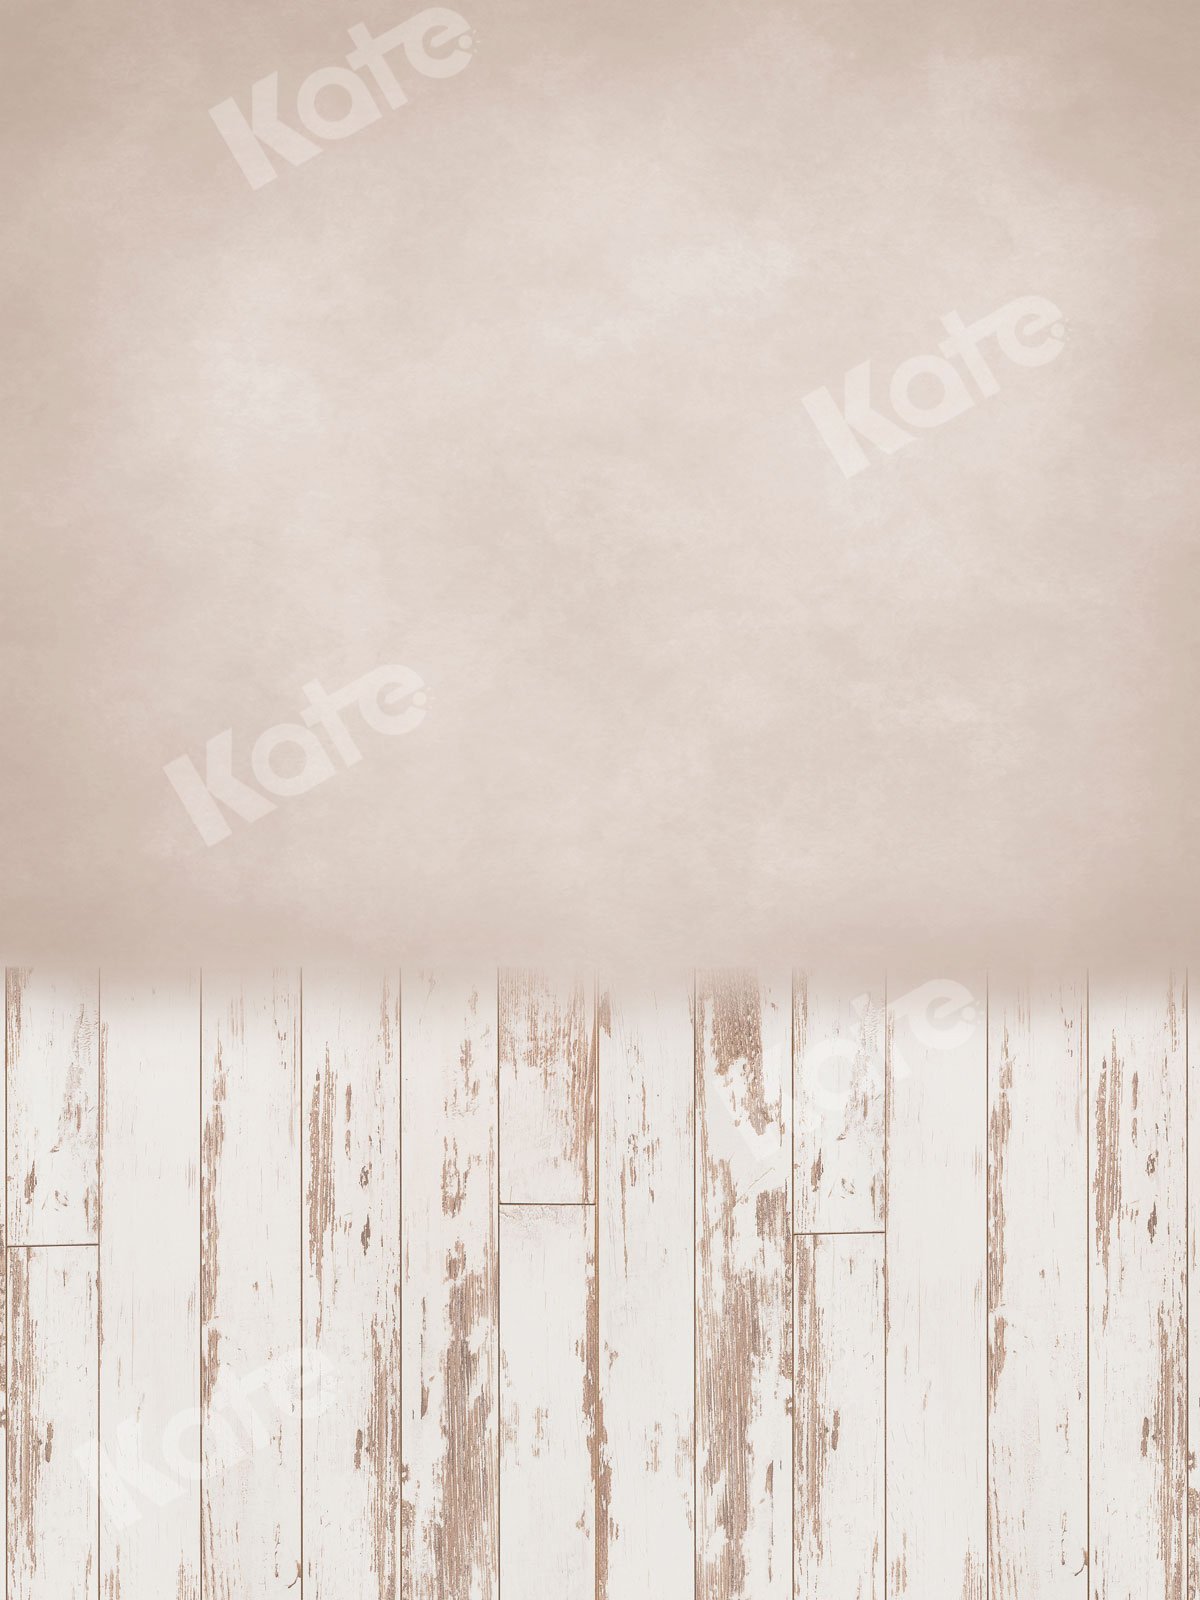 Kate Balayage Fond de sol blanc crème mur pour la photographie